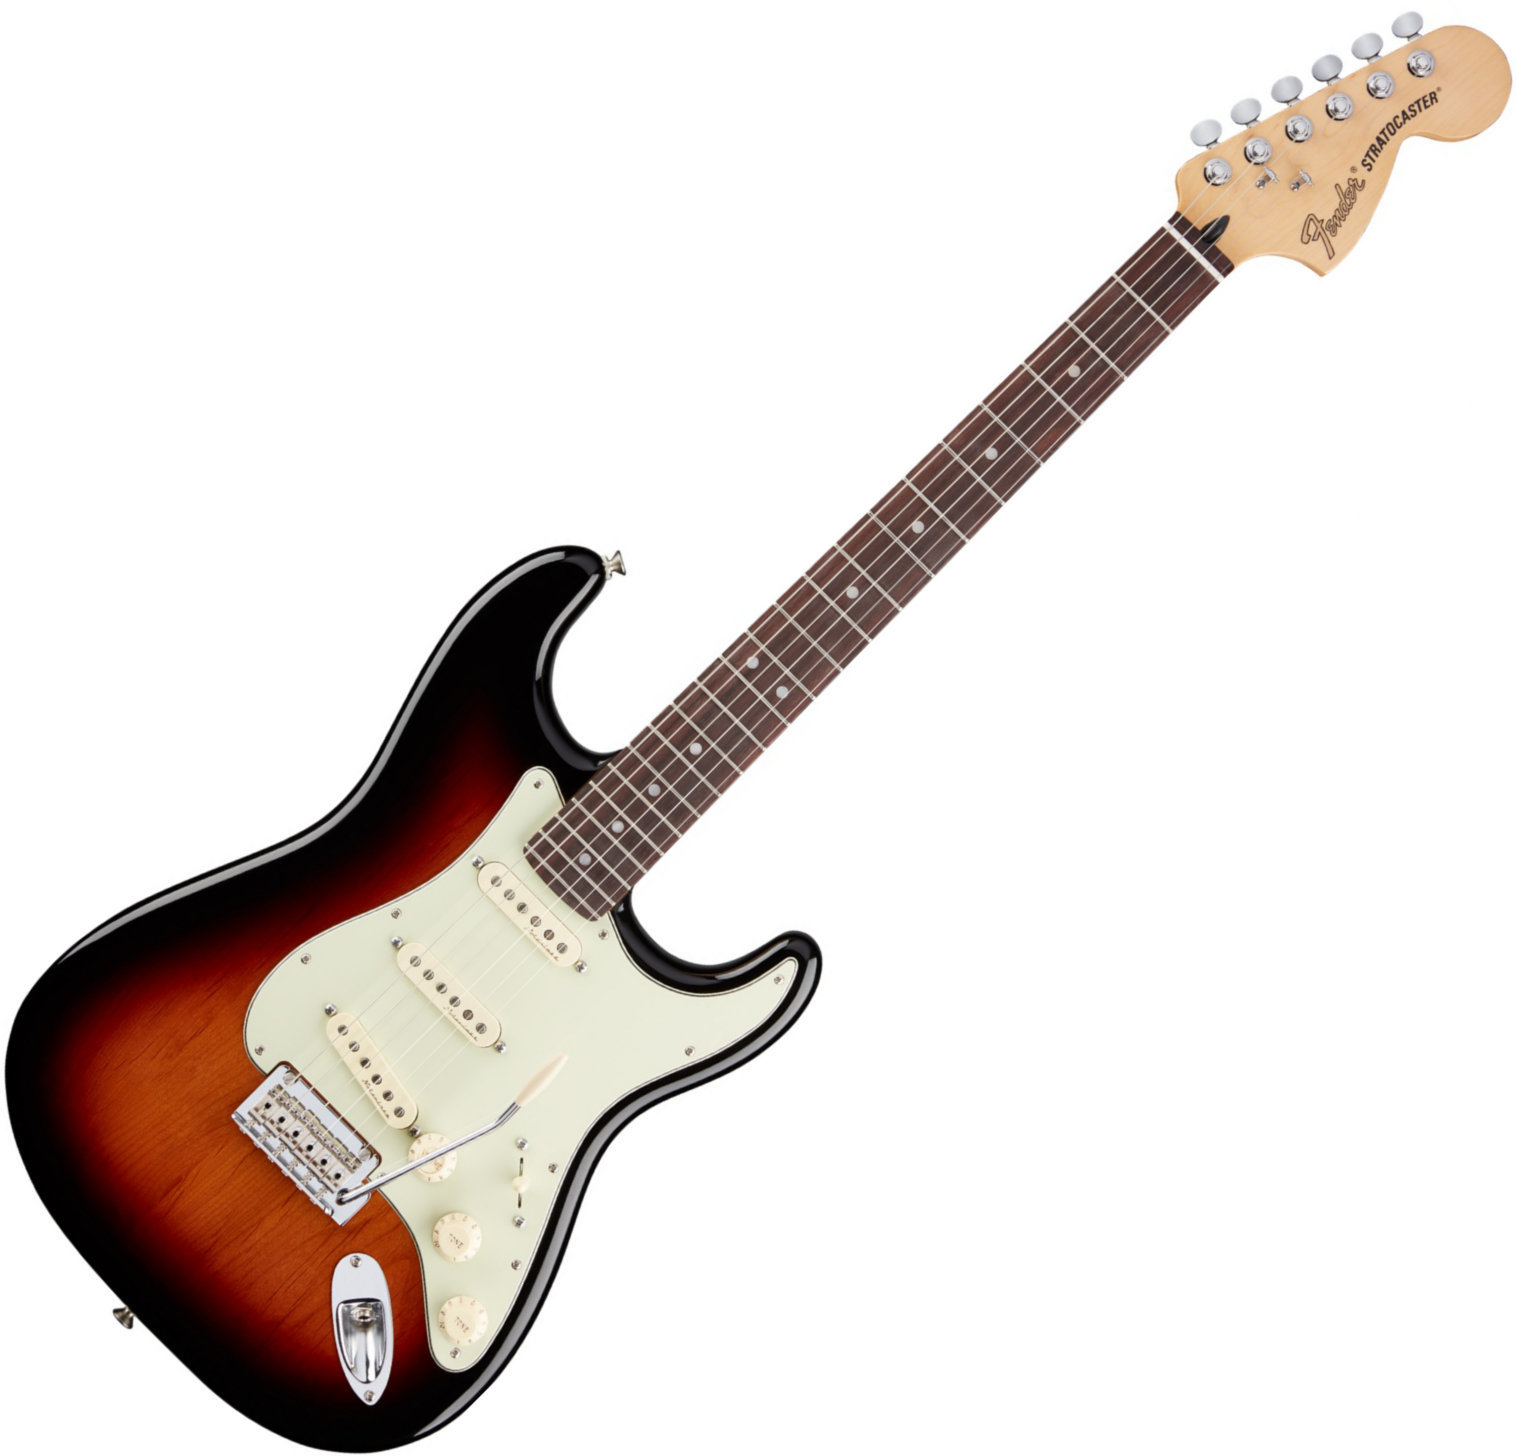 Ηλεκτρική Κιθάρα Fender Deluxe Roadhouse Stratocaster, RW, 3 Tone Sunburst